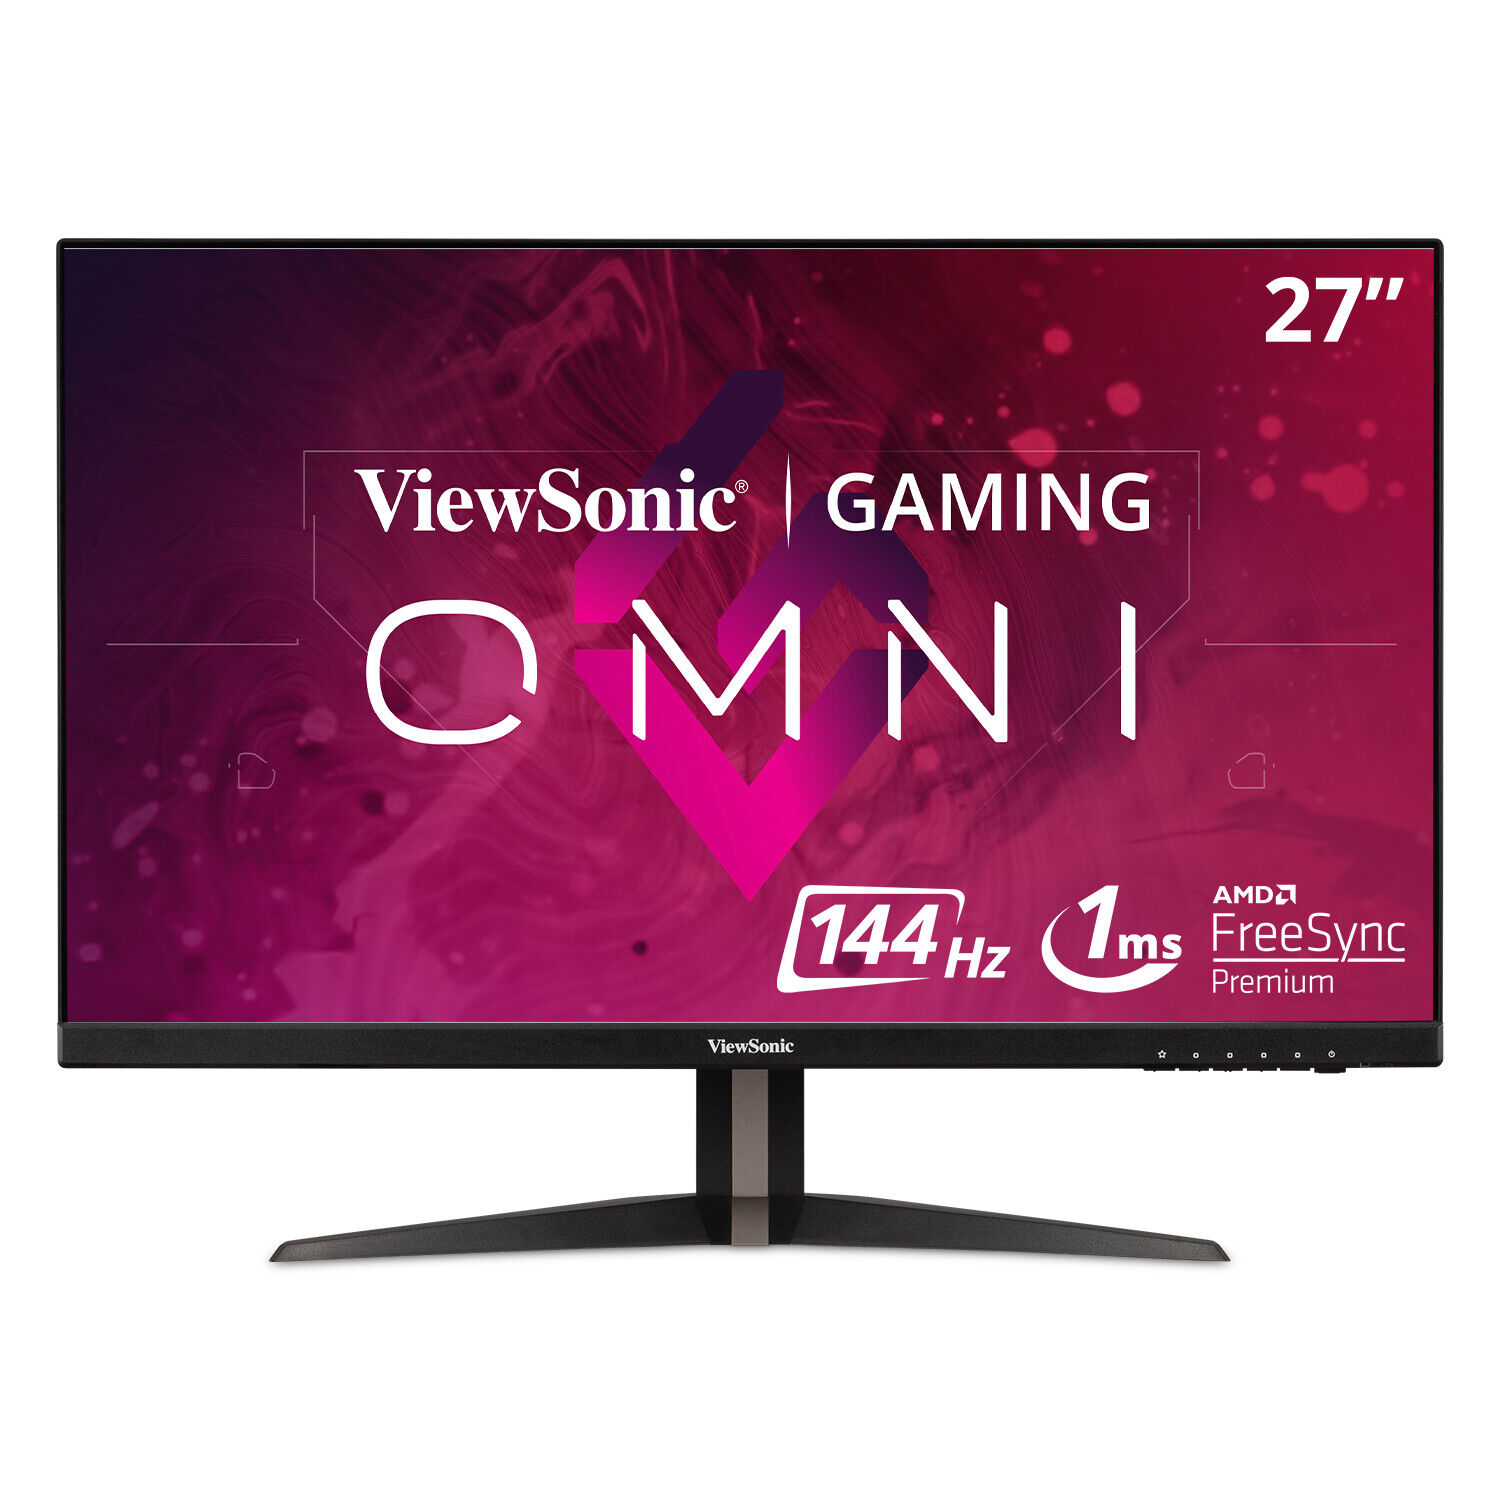 ViewSonic OMNI 1440p 144Hz IPS Gaming Monitor VX2768-2KP-MHD 27